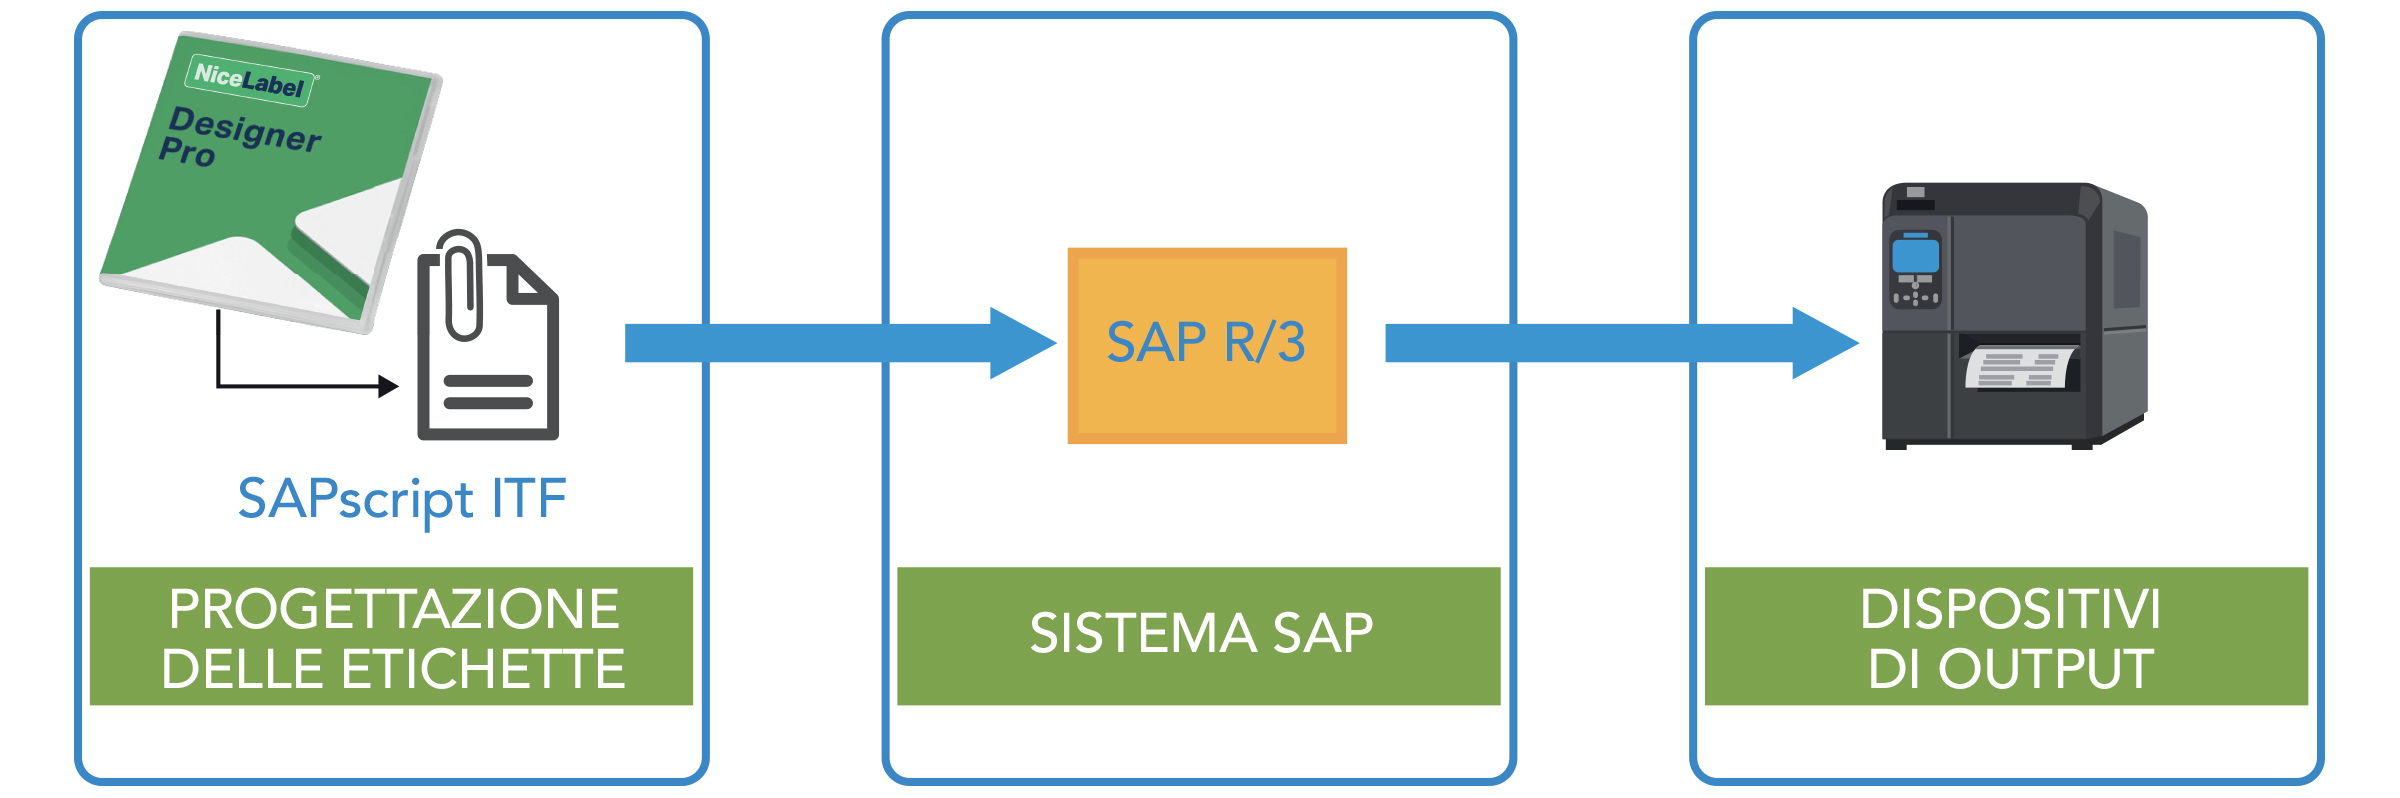 Progettazione etichette > Sistema SAP > Dispositivi di output